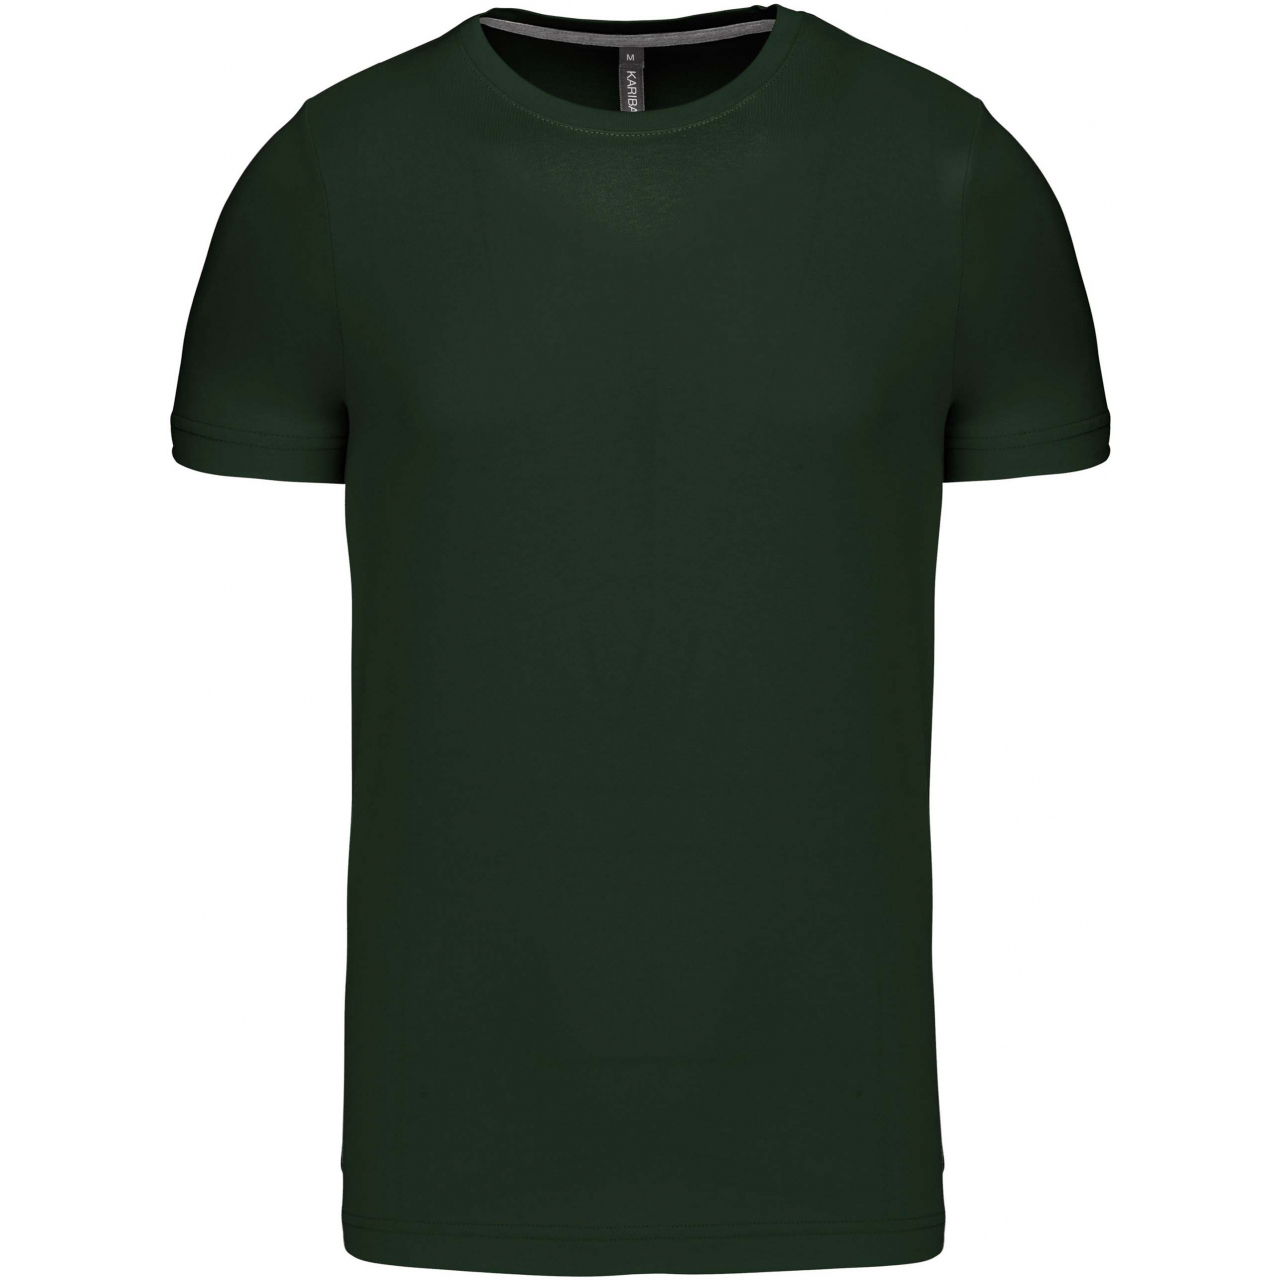 Pánské tričko Kariban krátký rukáv - tmavě zelené, L